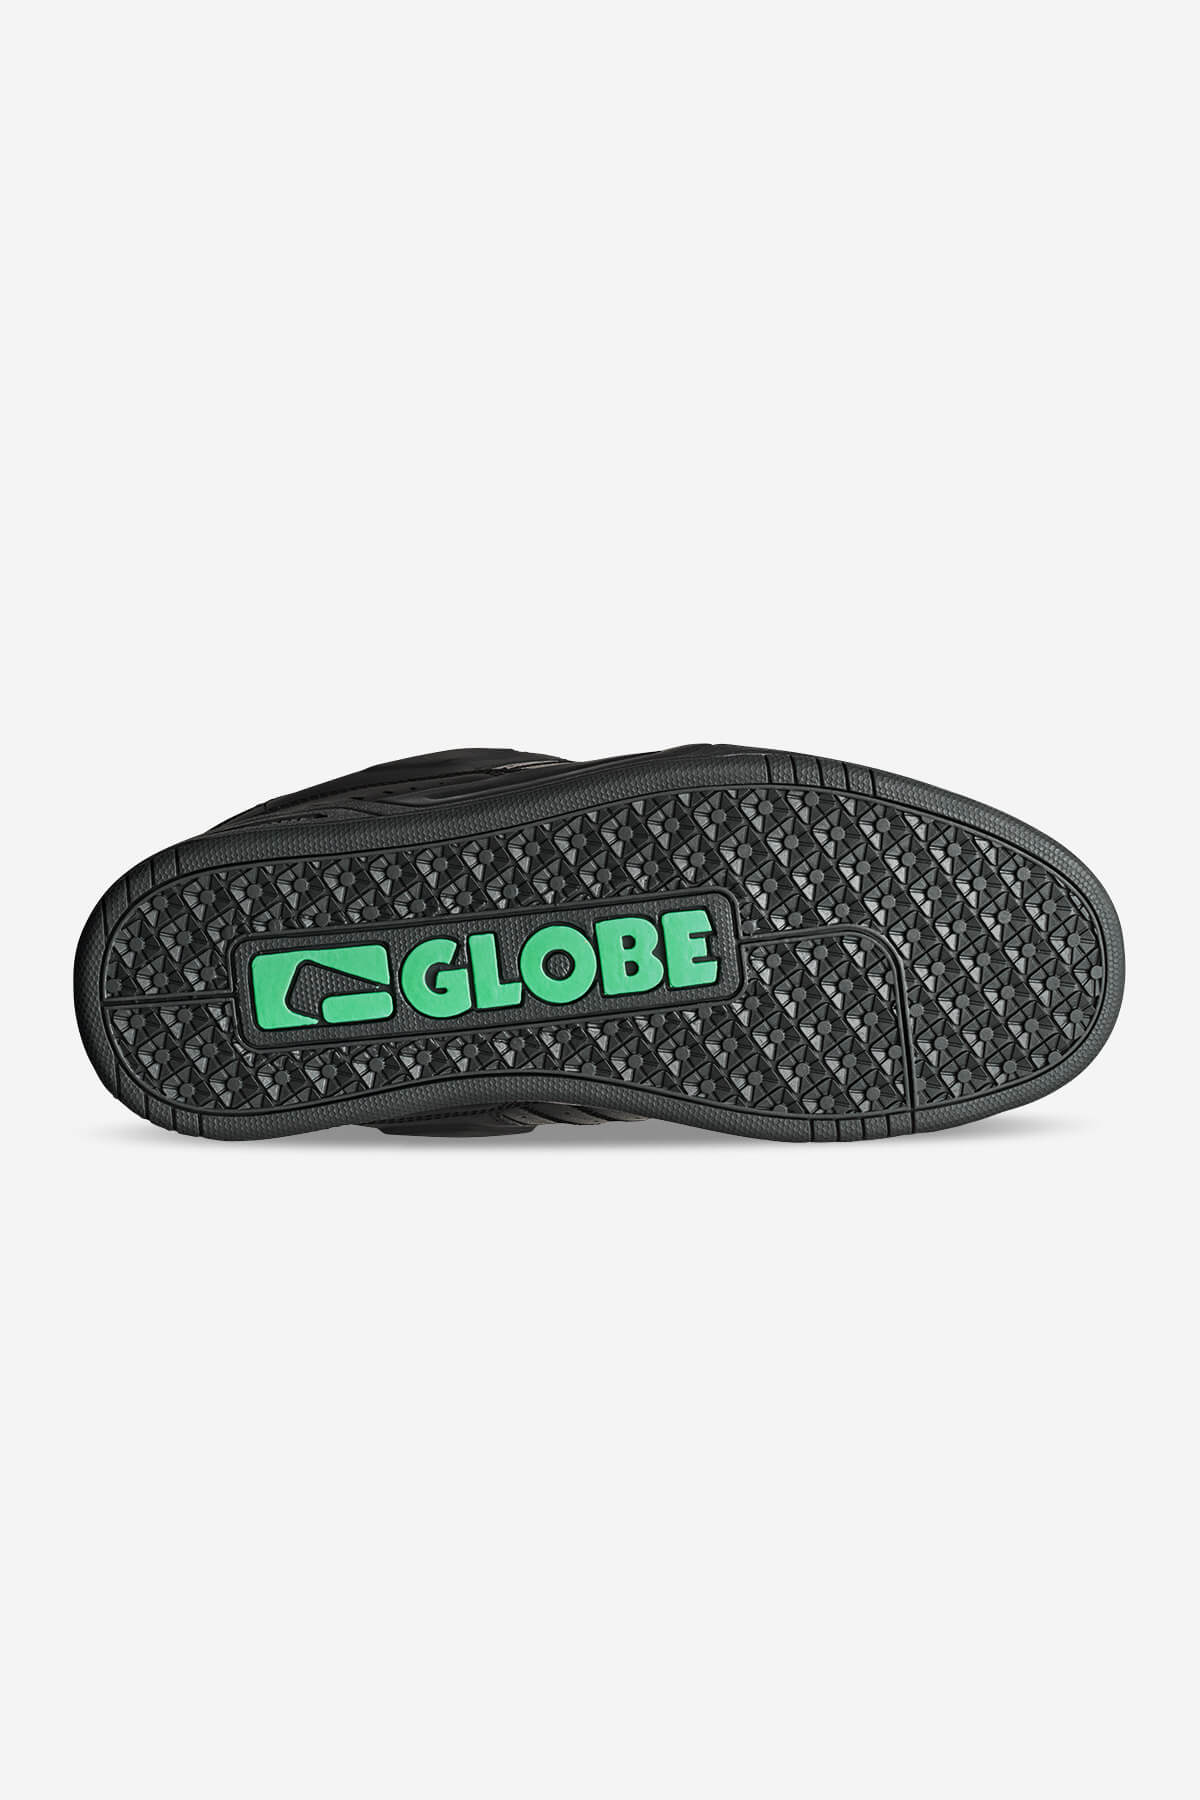 Globe - Fusion - Phantom Dip - skateboard Sapatos